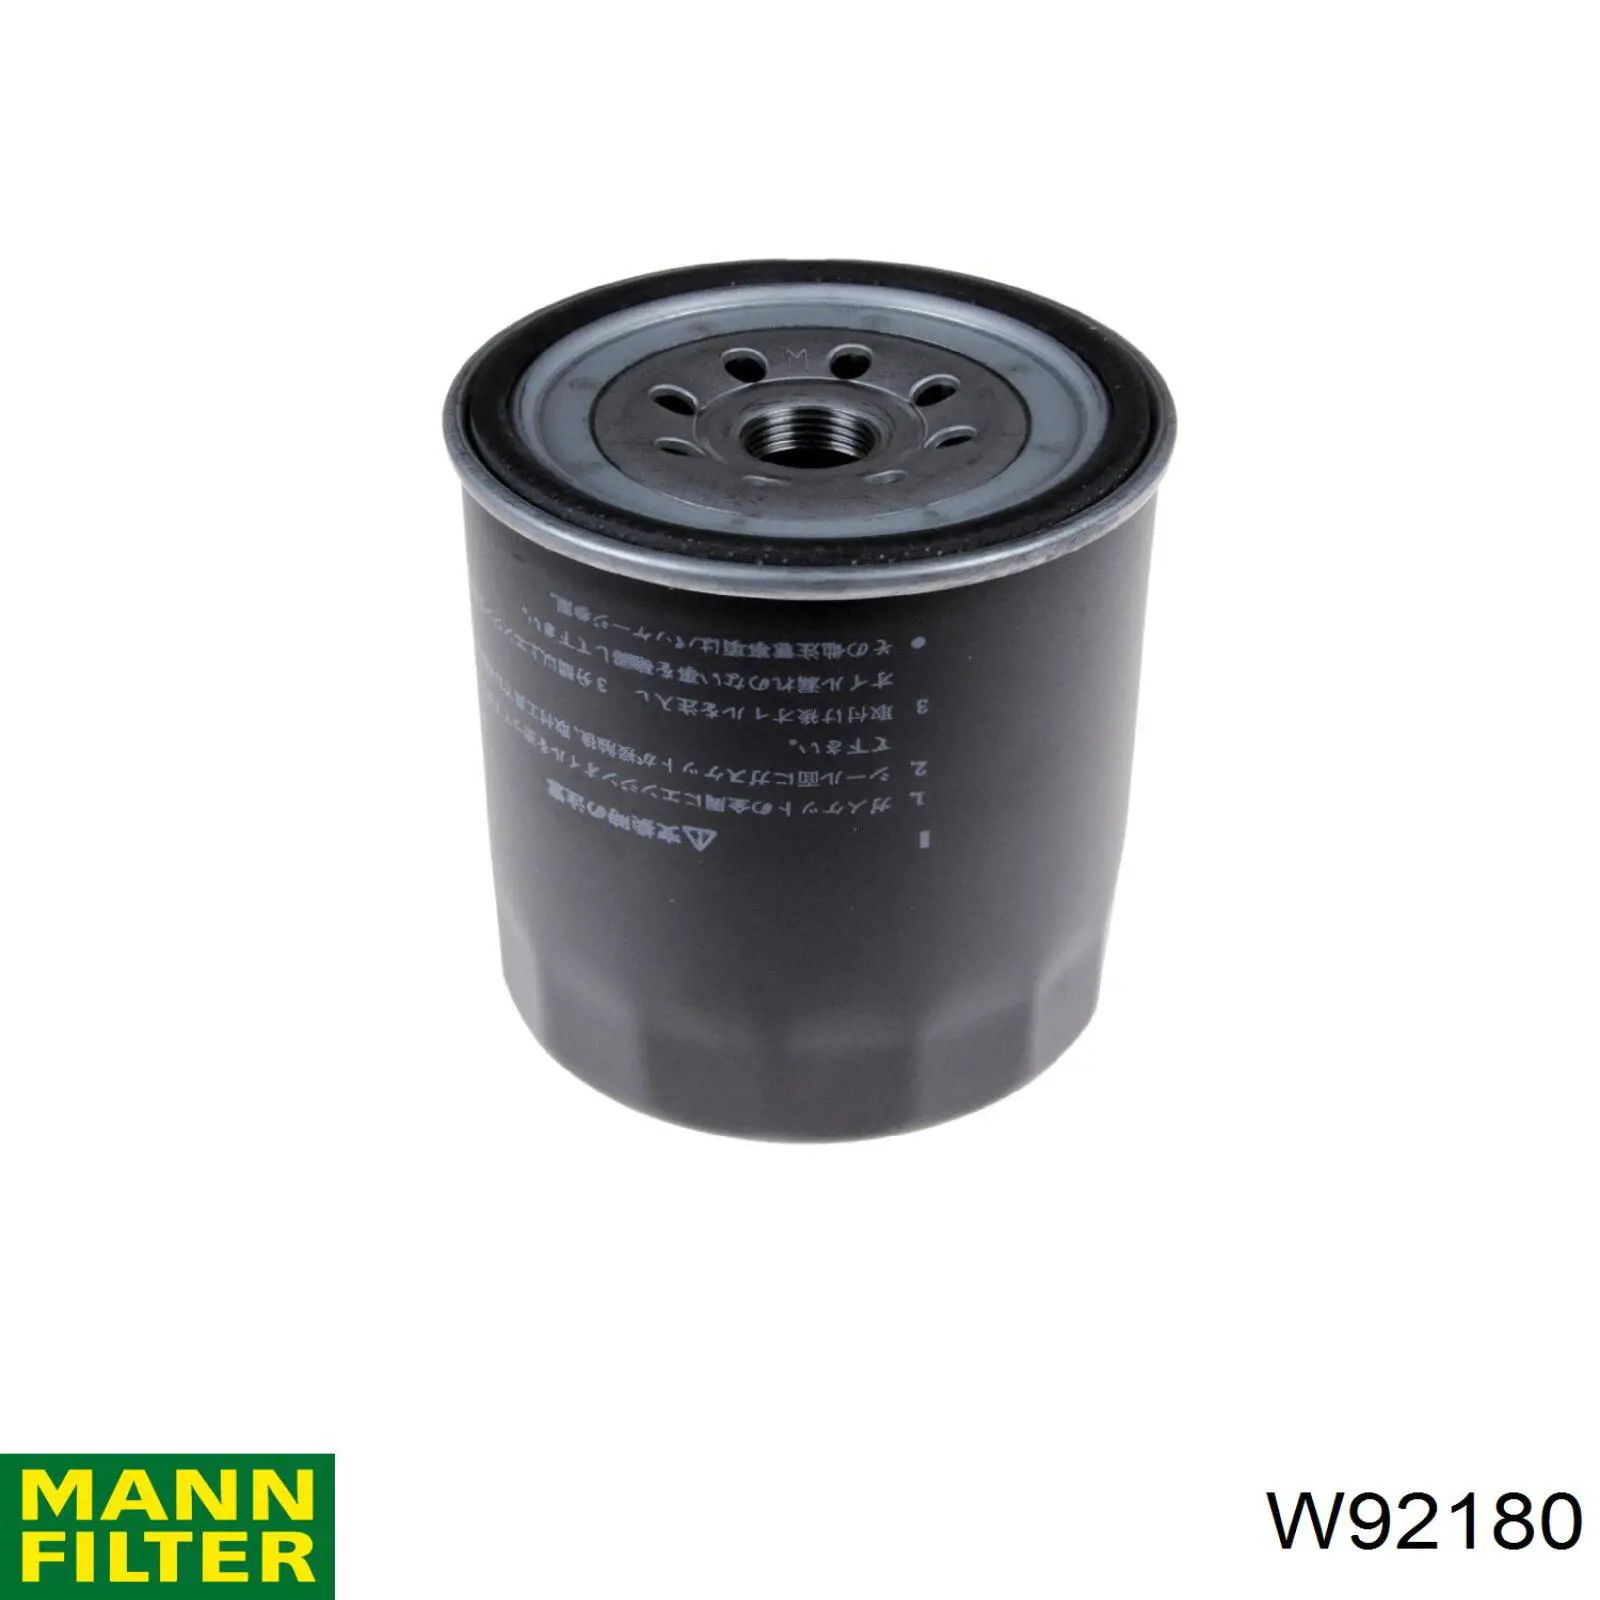 W92180 Mann-Filter filtro de aceite